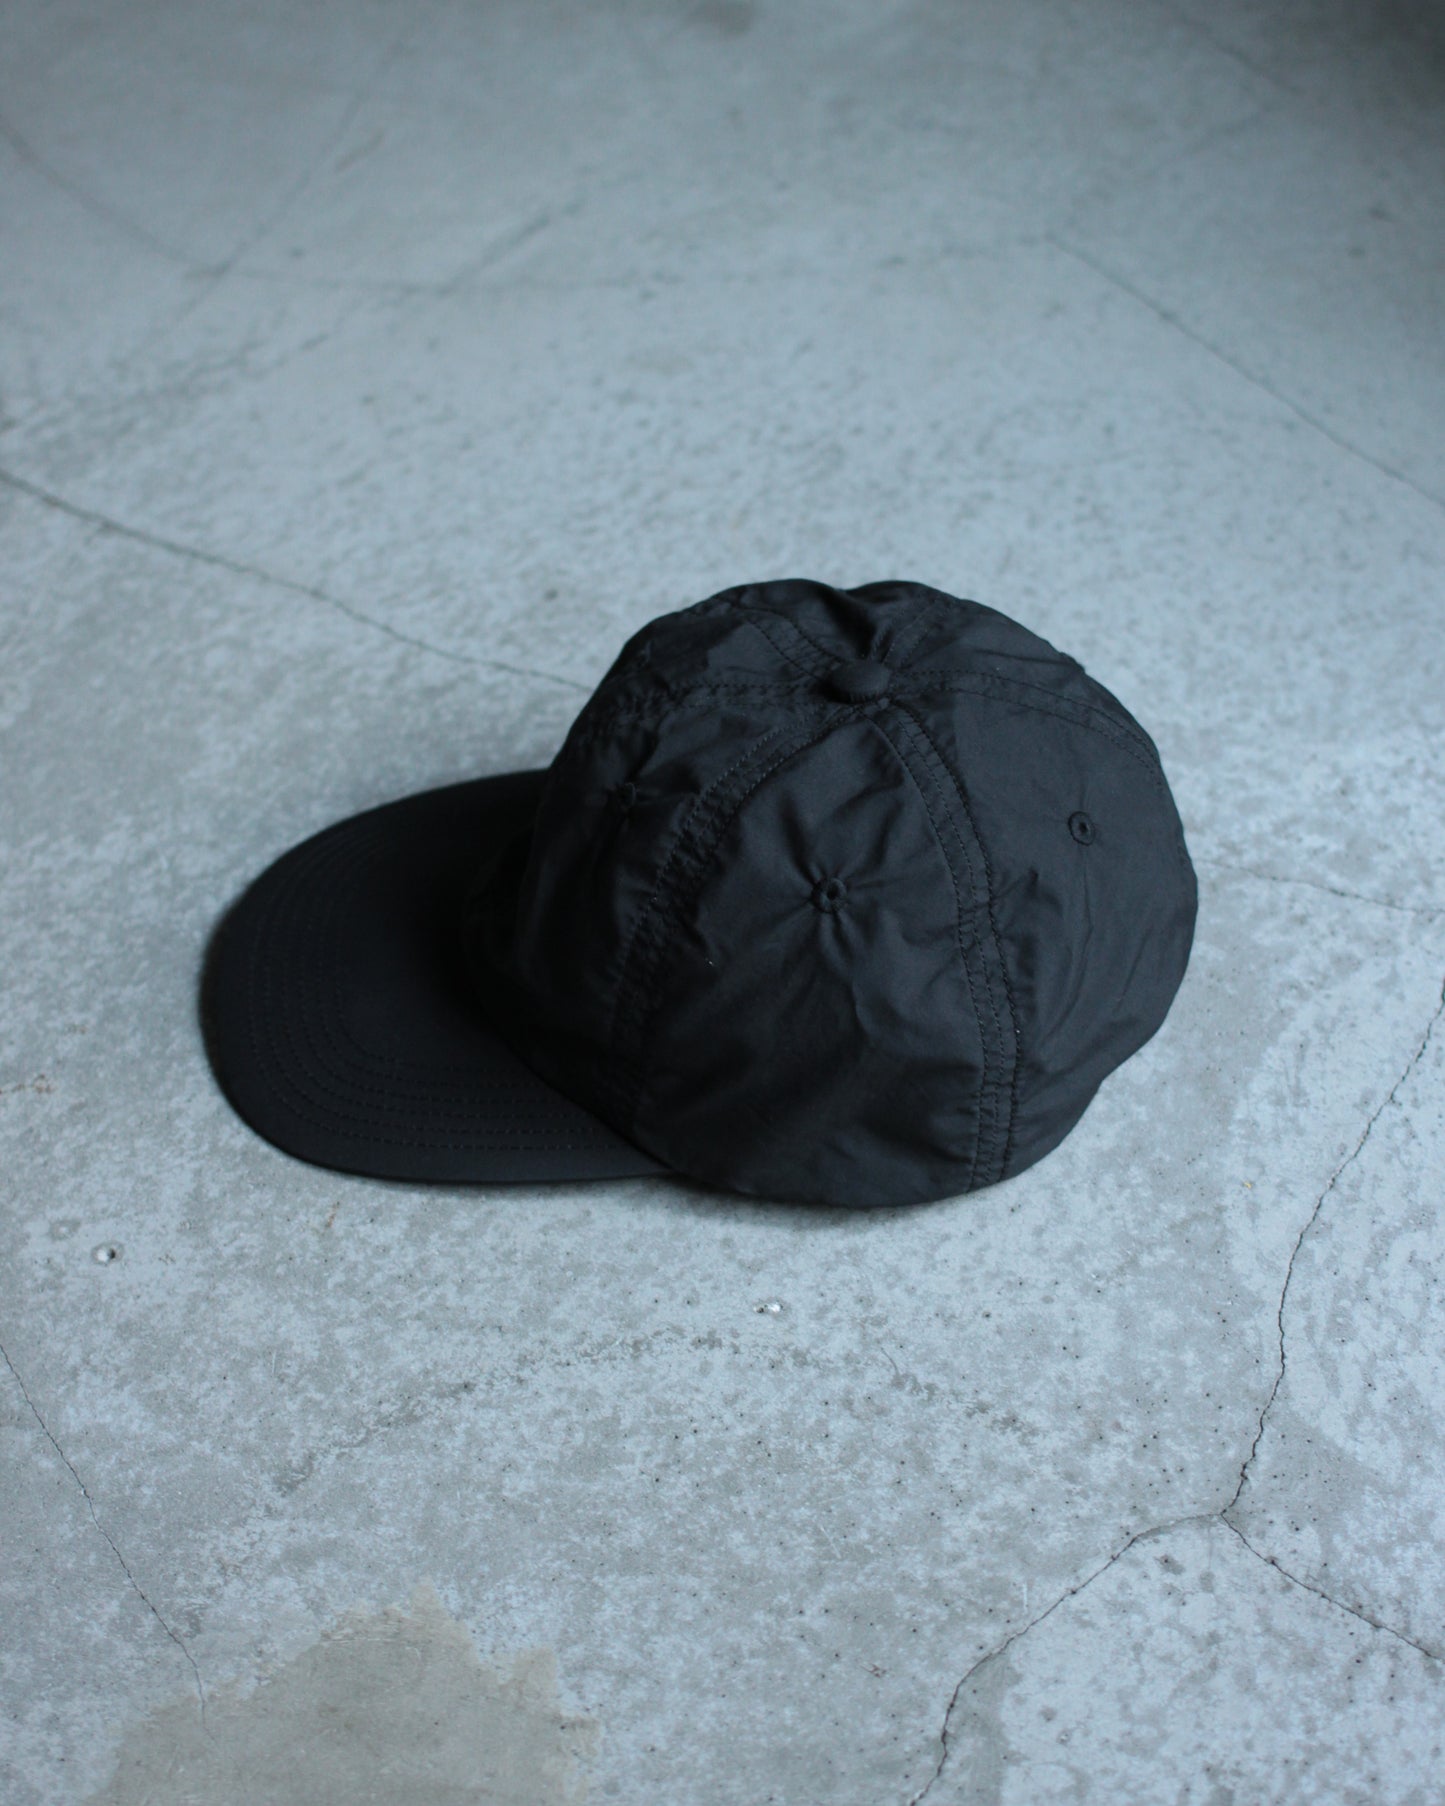 KIJIMA TAKAYUKI / Elastic Back 6panel Cap "Black"